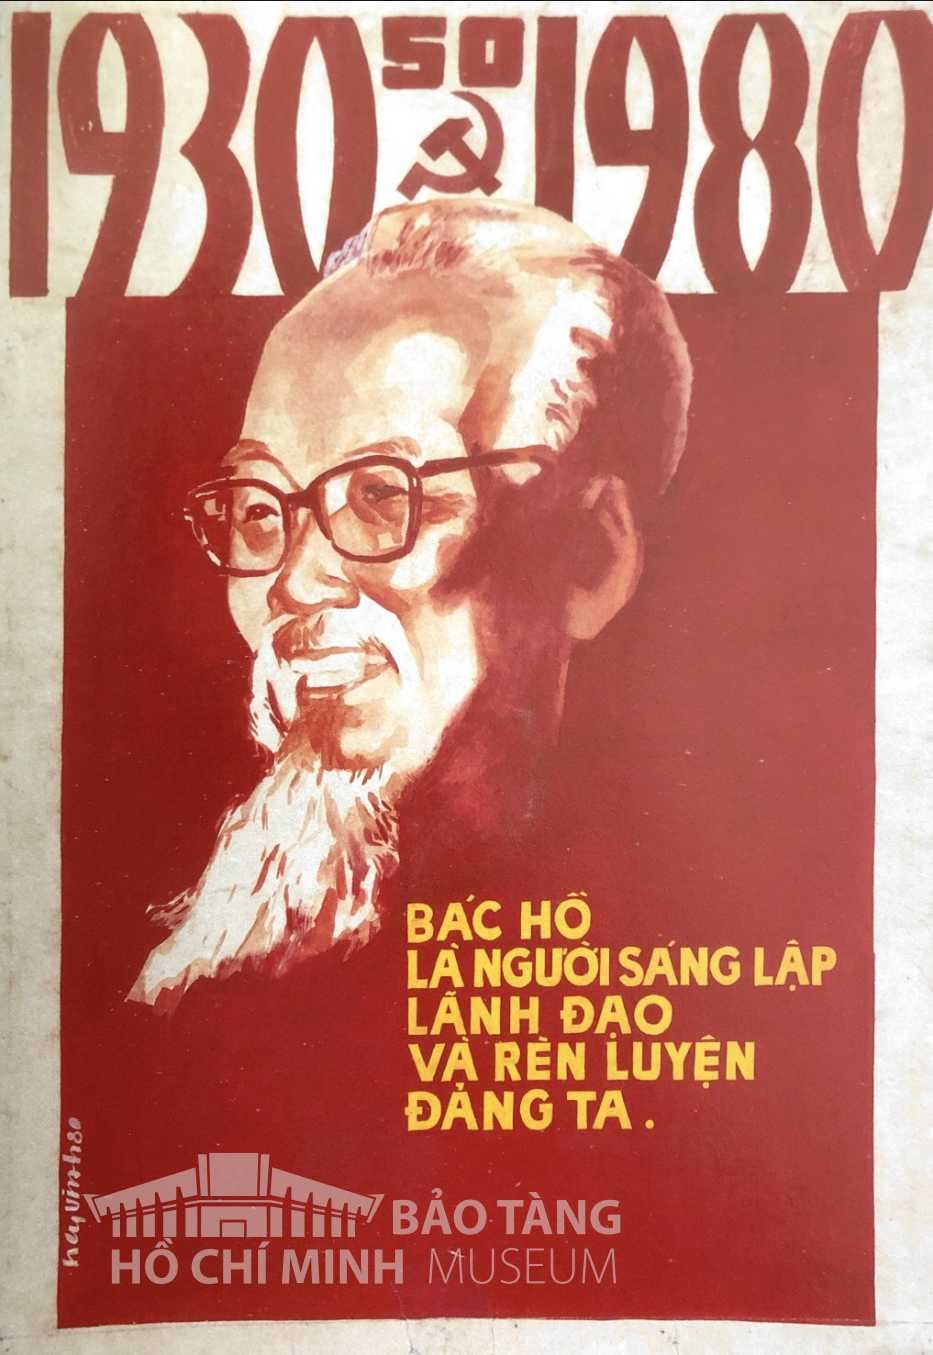 Tranh: Nguyễn Vinh
Bột màu, 1980Nguồn: Bảo tàng Mỹ thuật Việt Nam